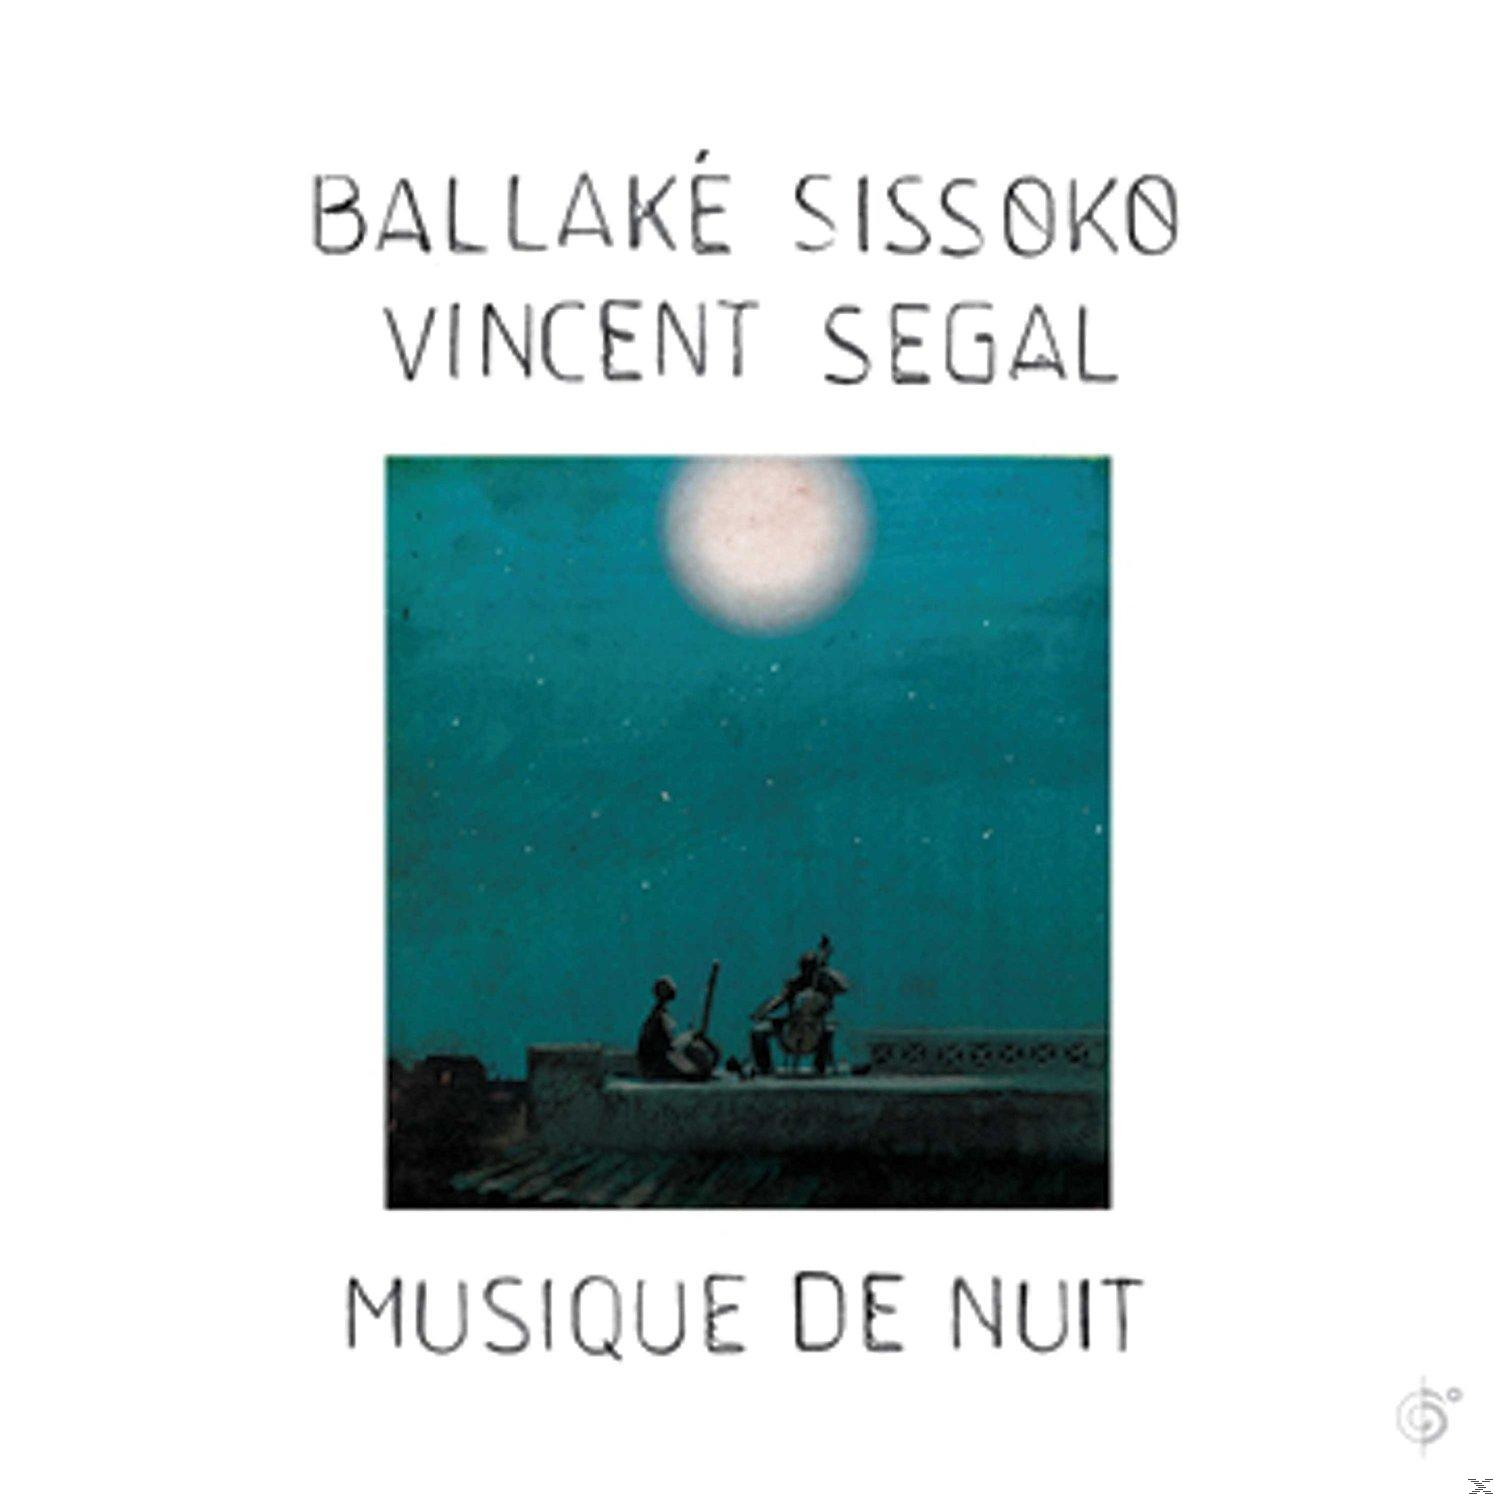 Ballake Sissoko, De - Segal - Nuit Download) Vincent + (LP Musique